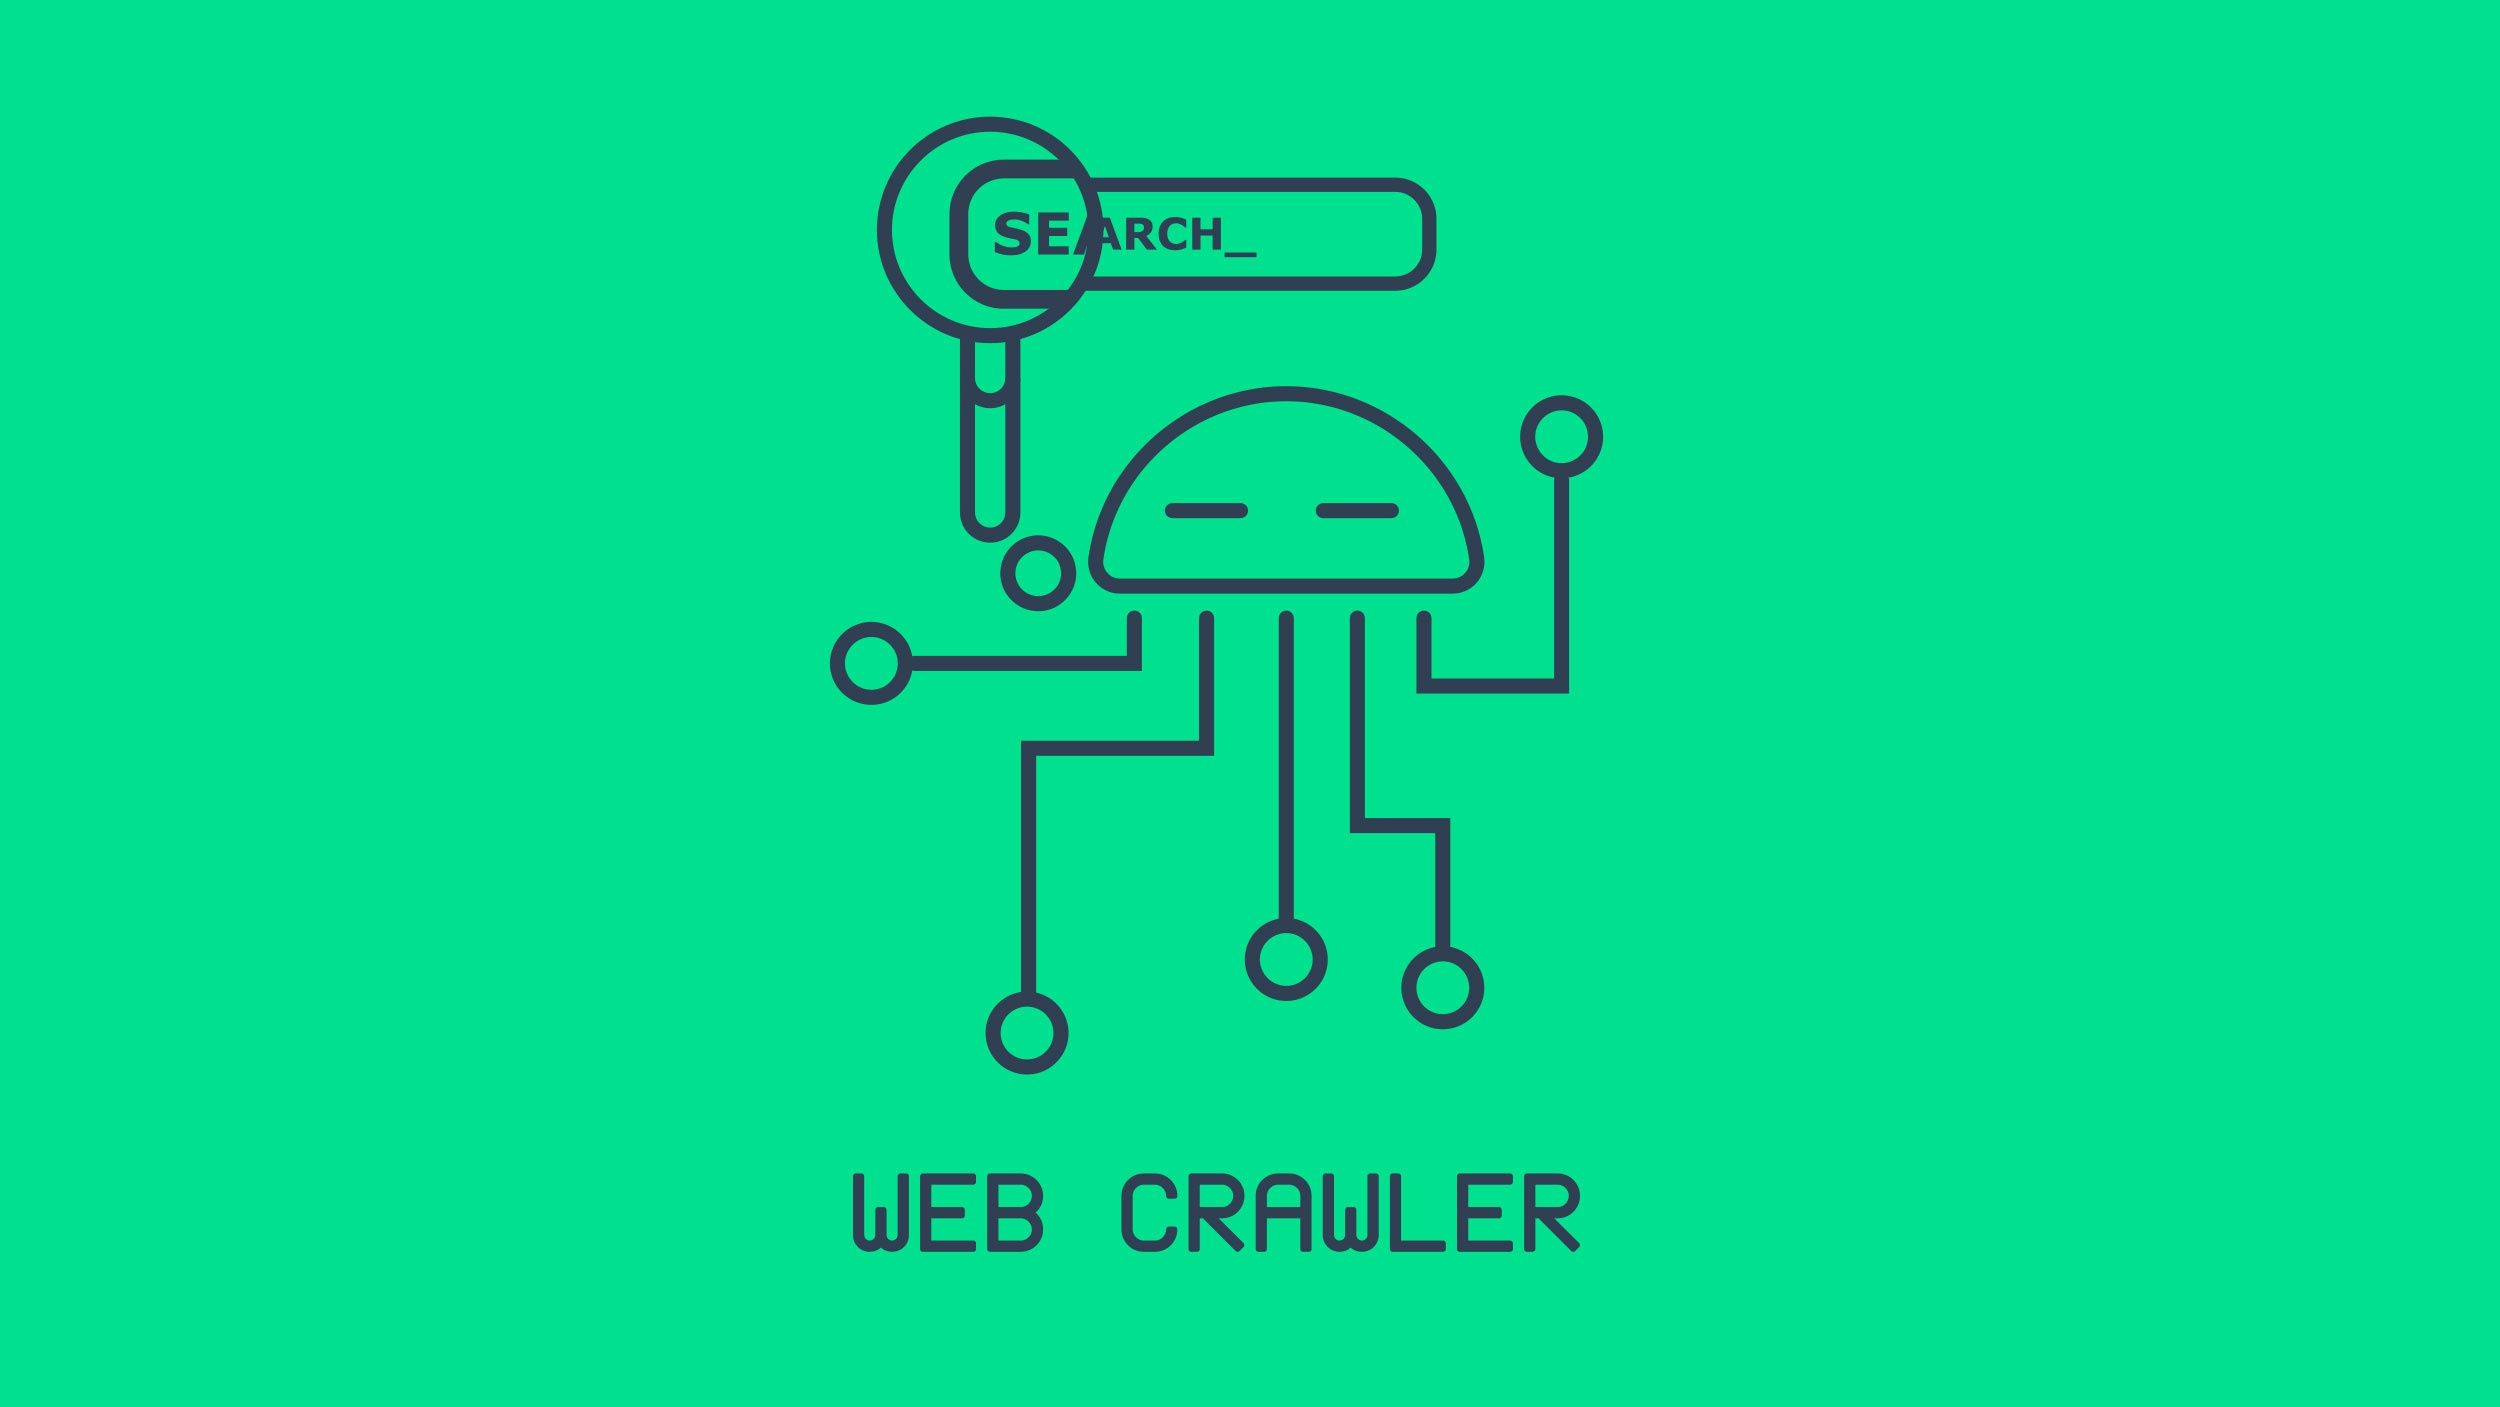 Illustration eines Webcrawlers von Google der nach einem Relaunch über die Website crawlt